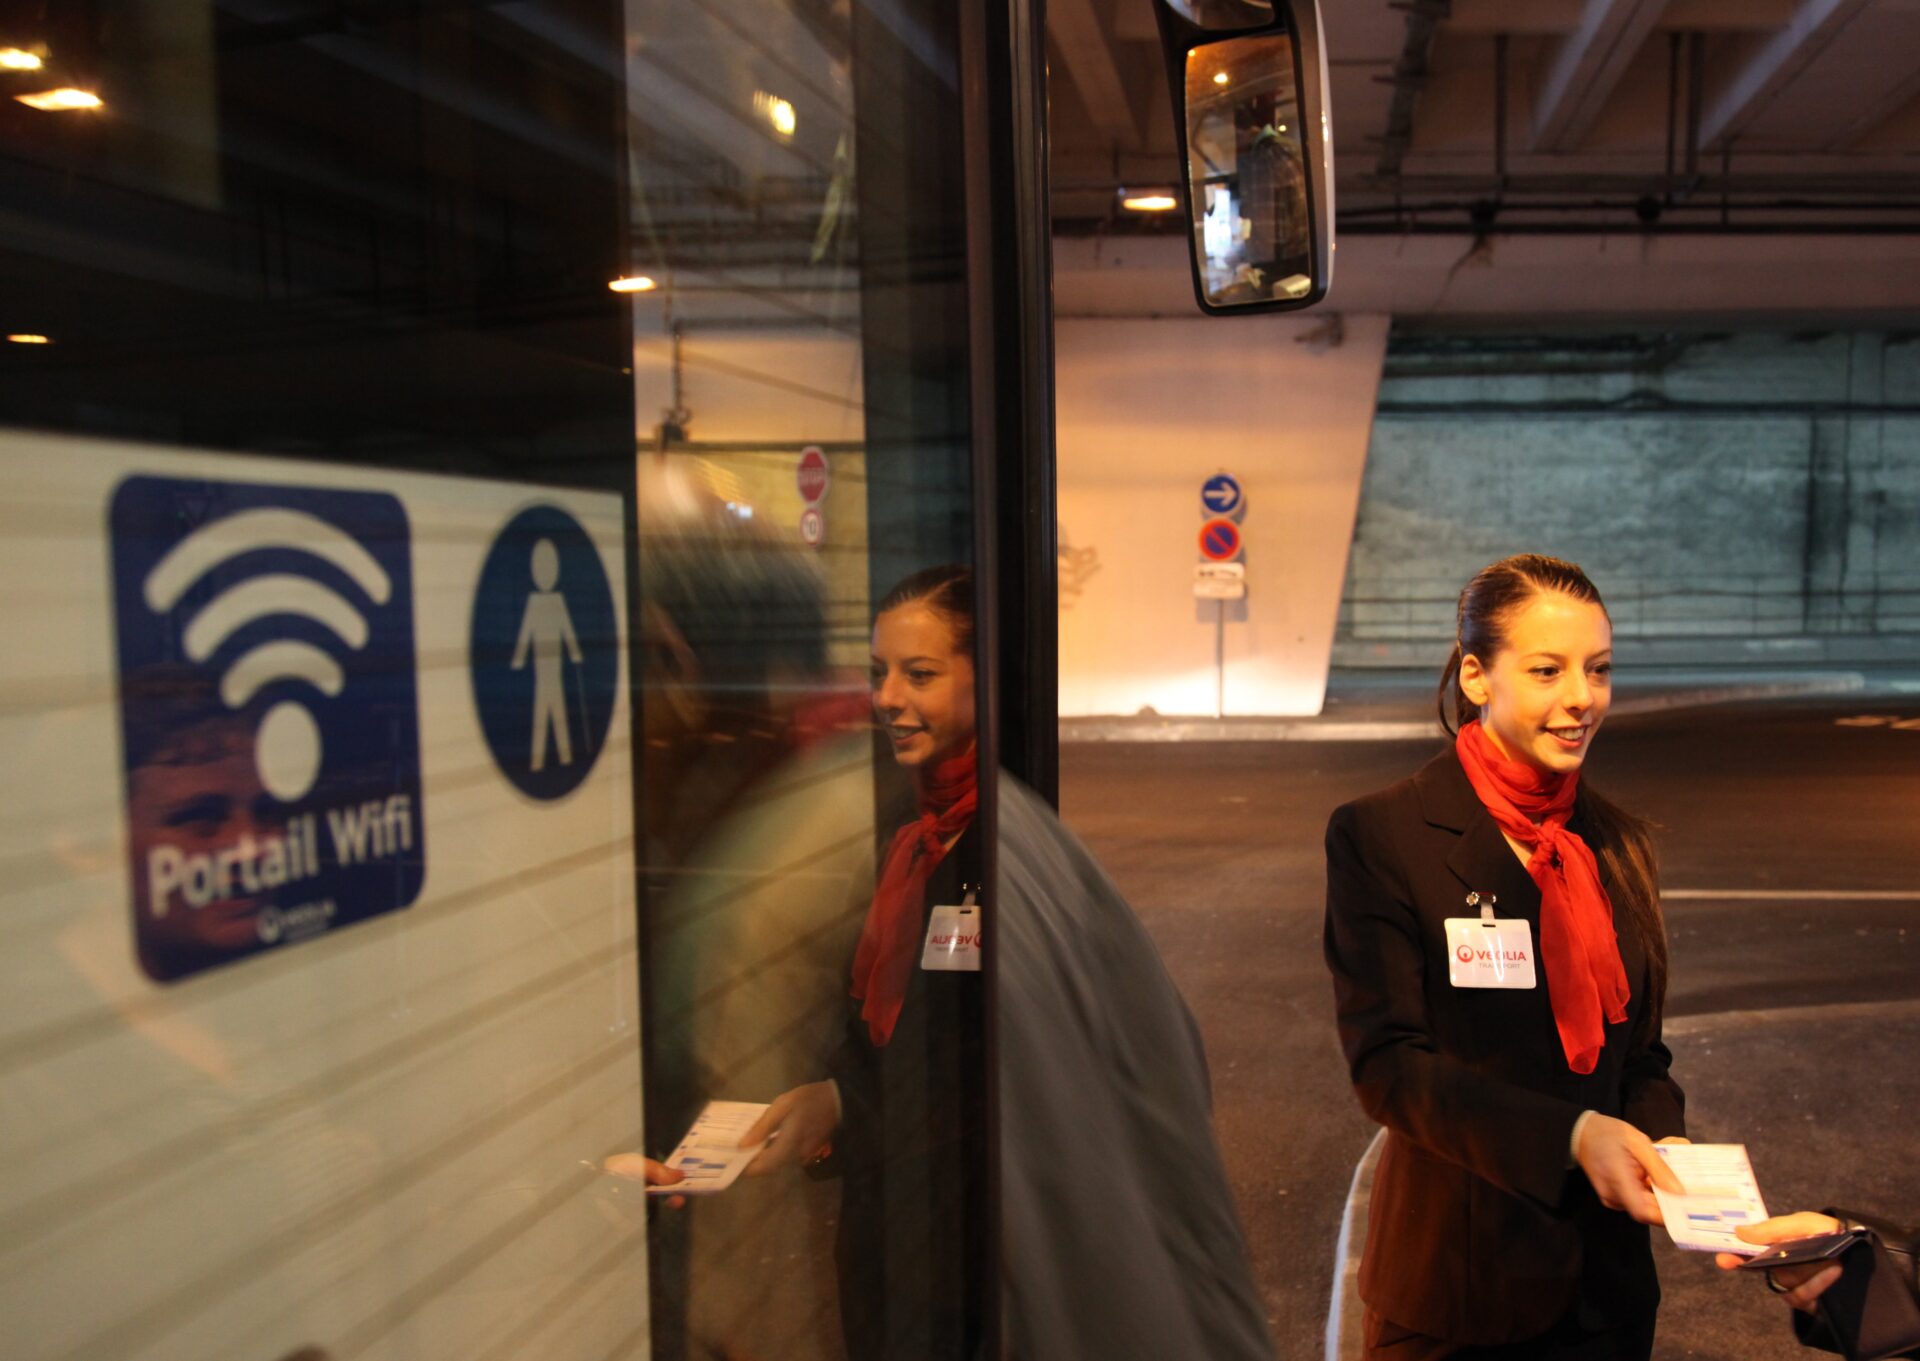 Les bus équipés du Wi-Fi sont signalés par un logo